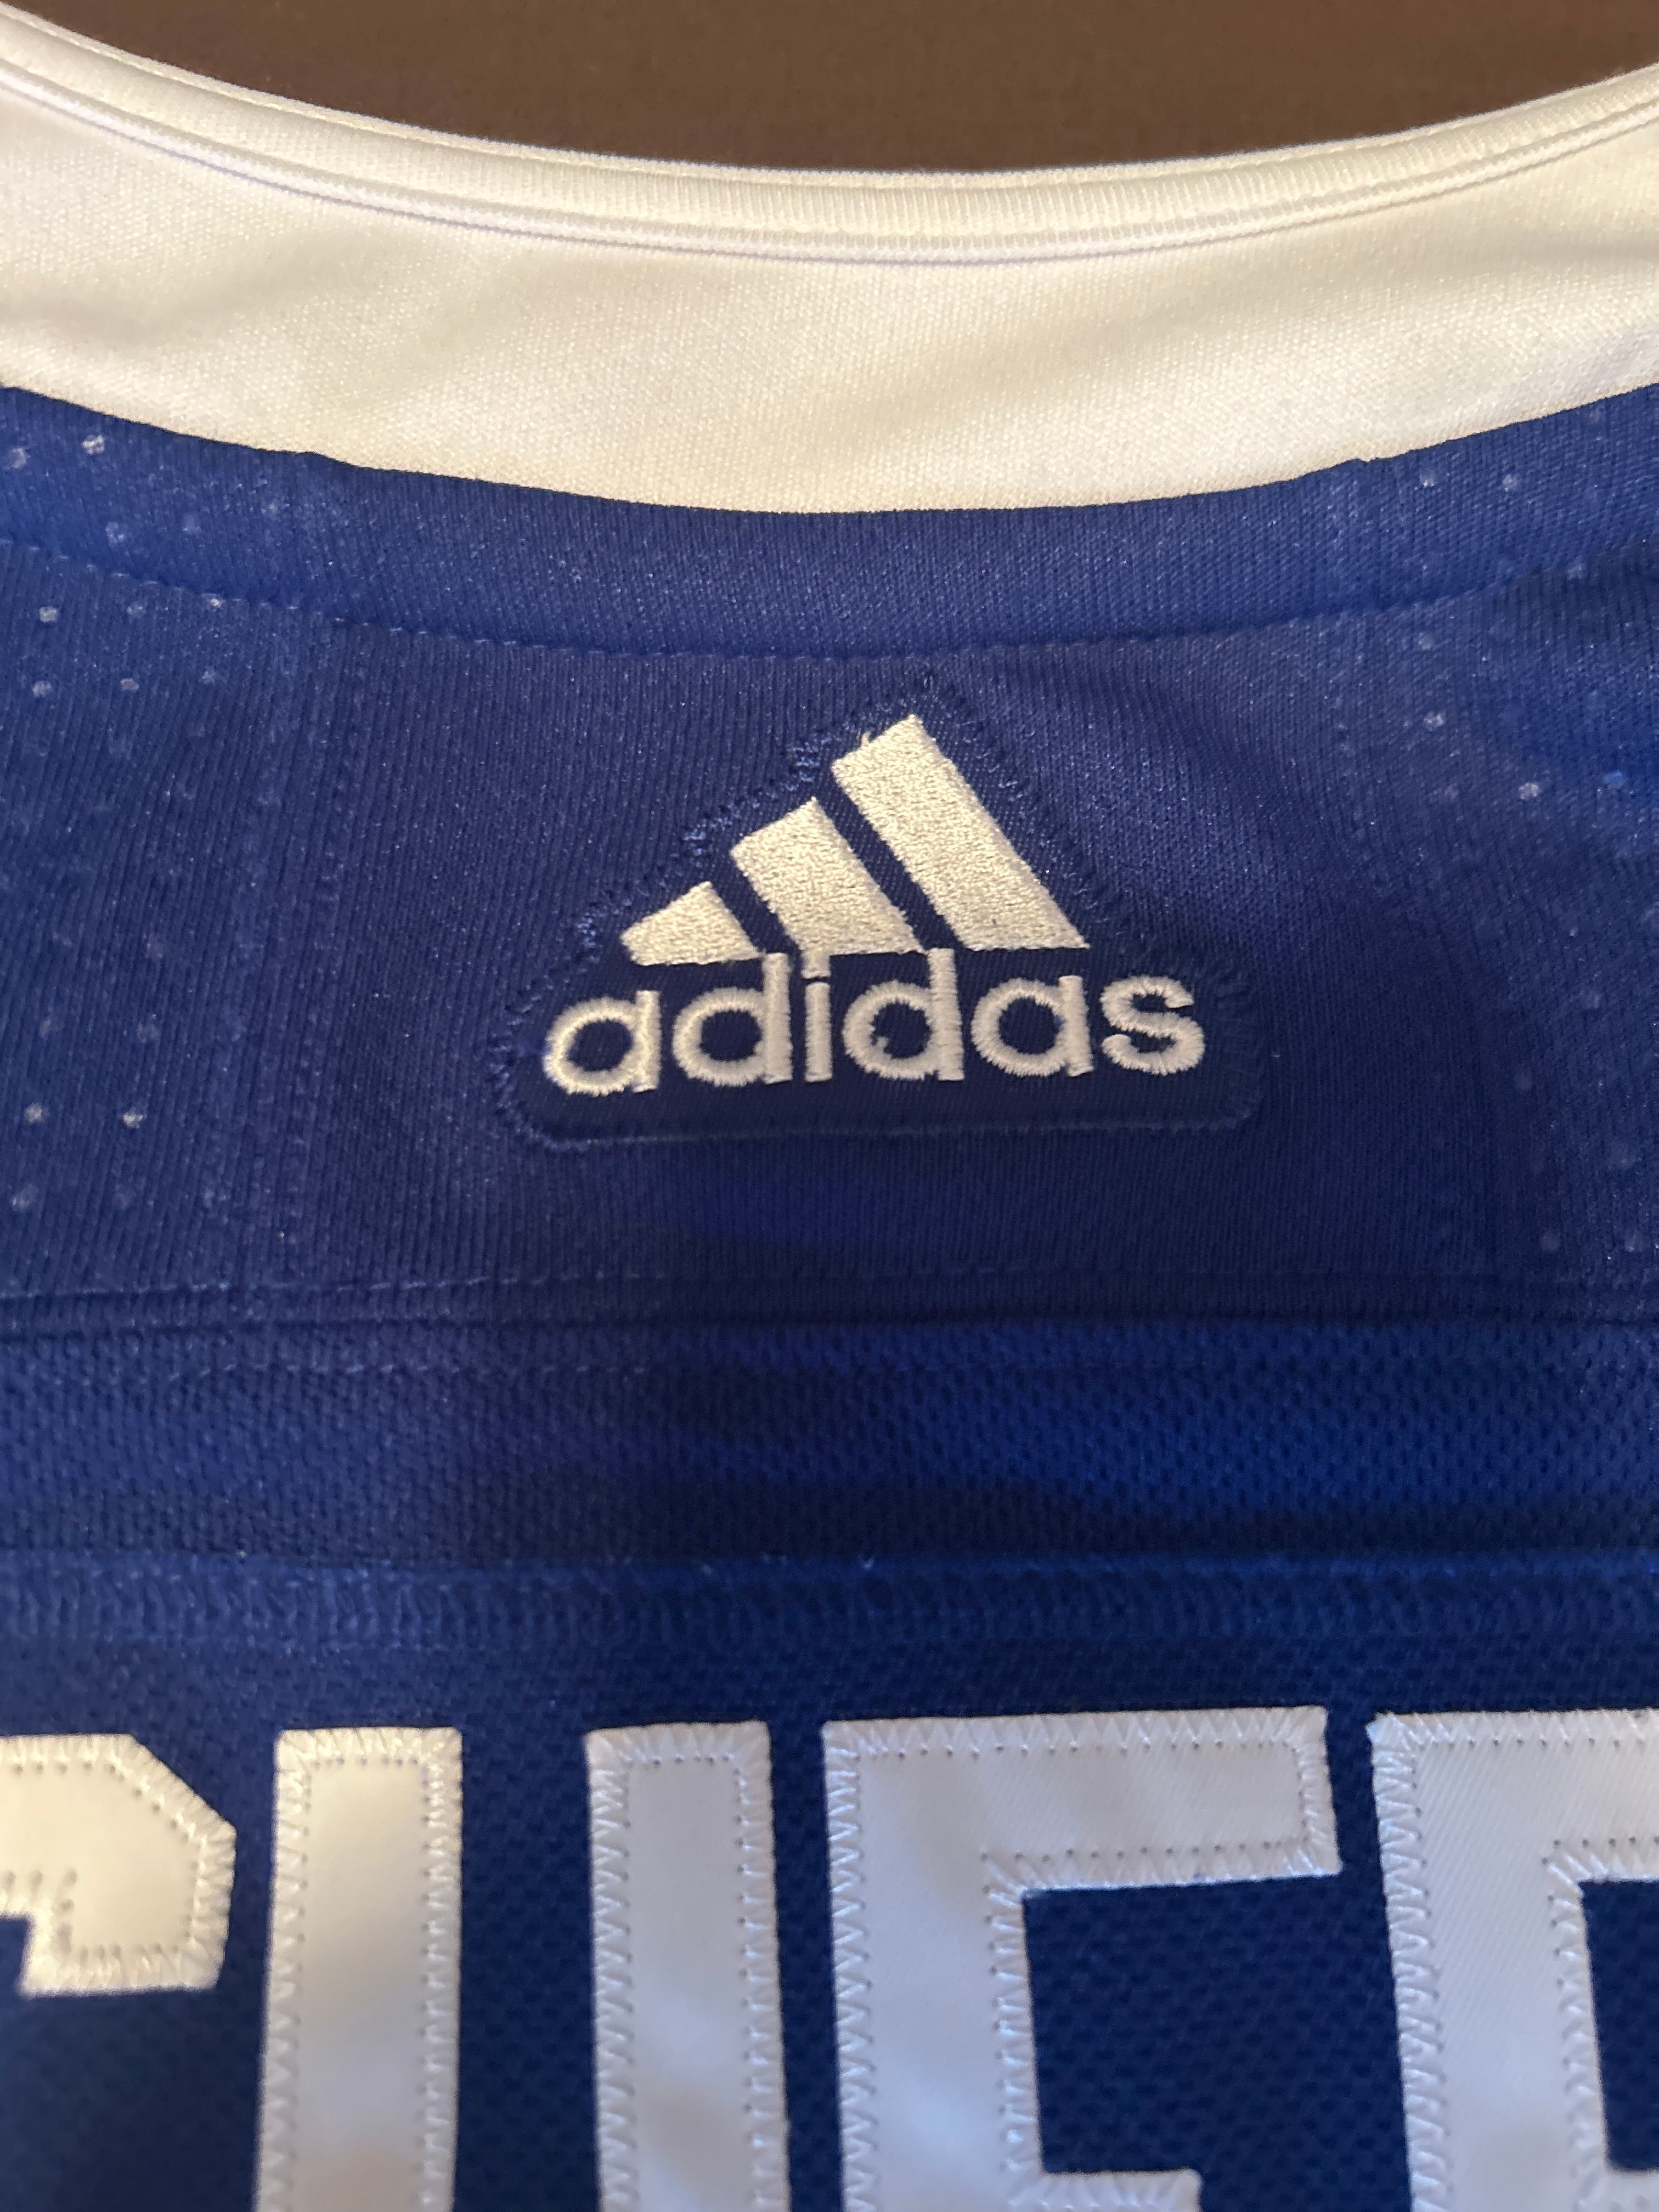 Adidas / Men's Tampa Bay Lightning Nikita Kucherov #86 Authentic